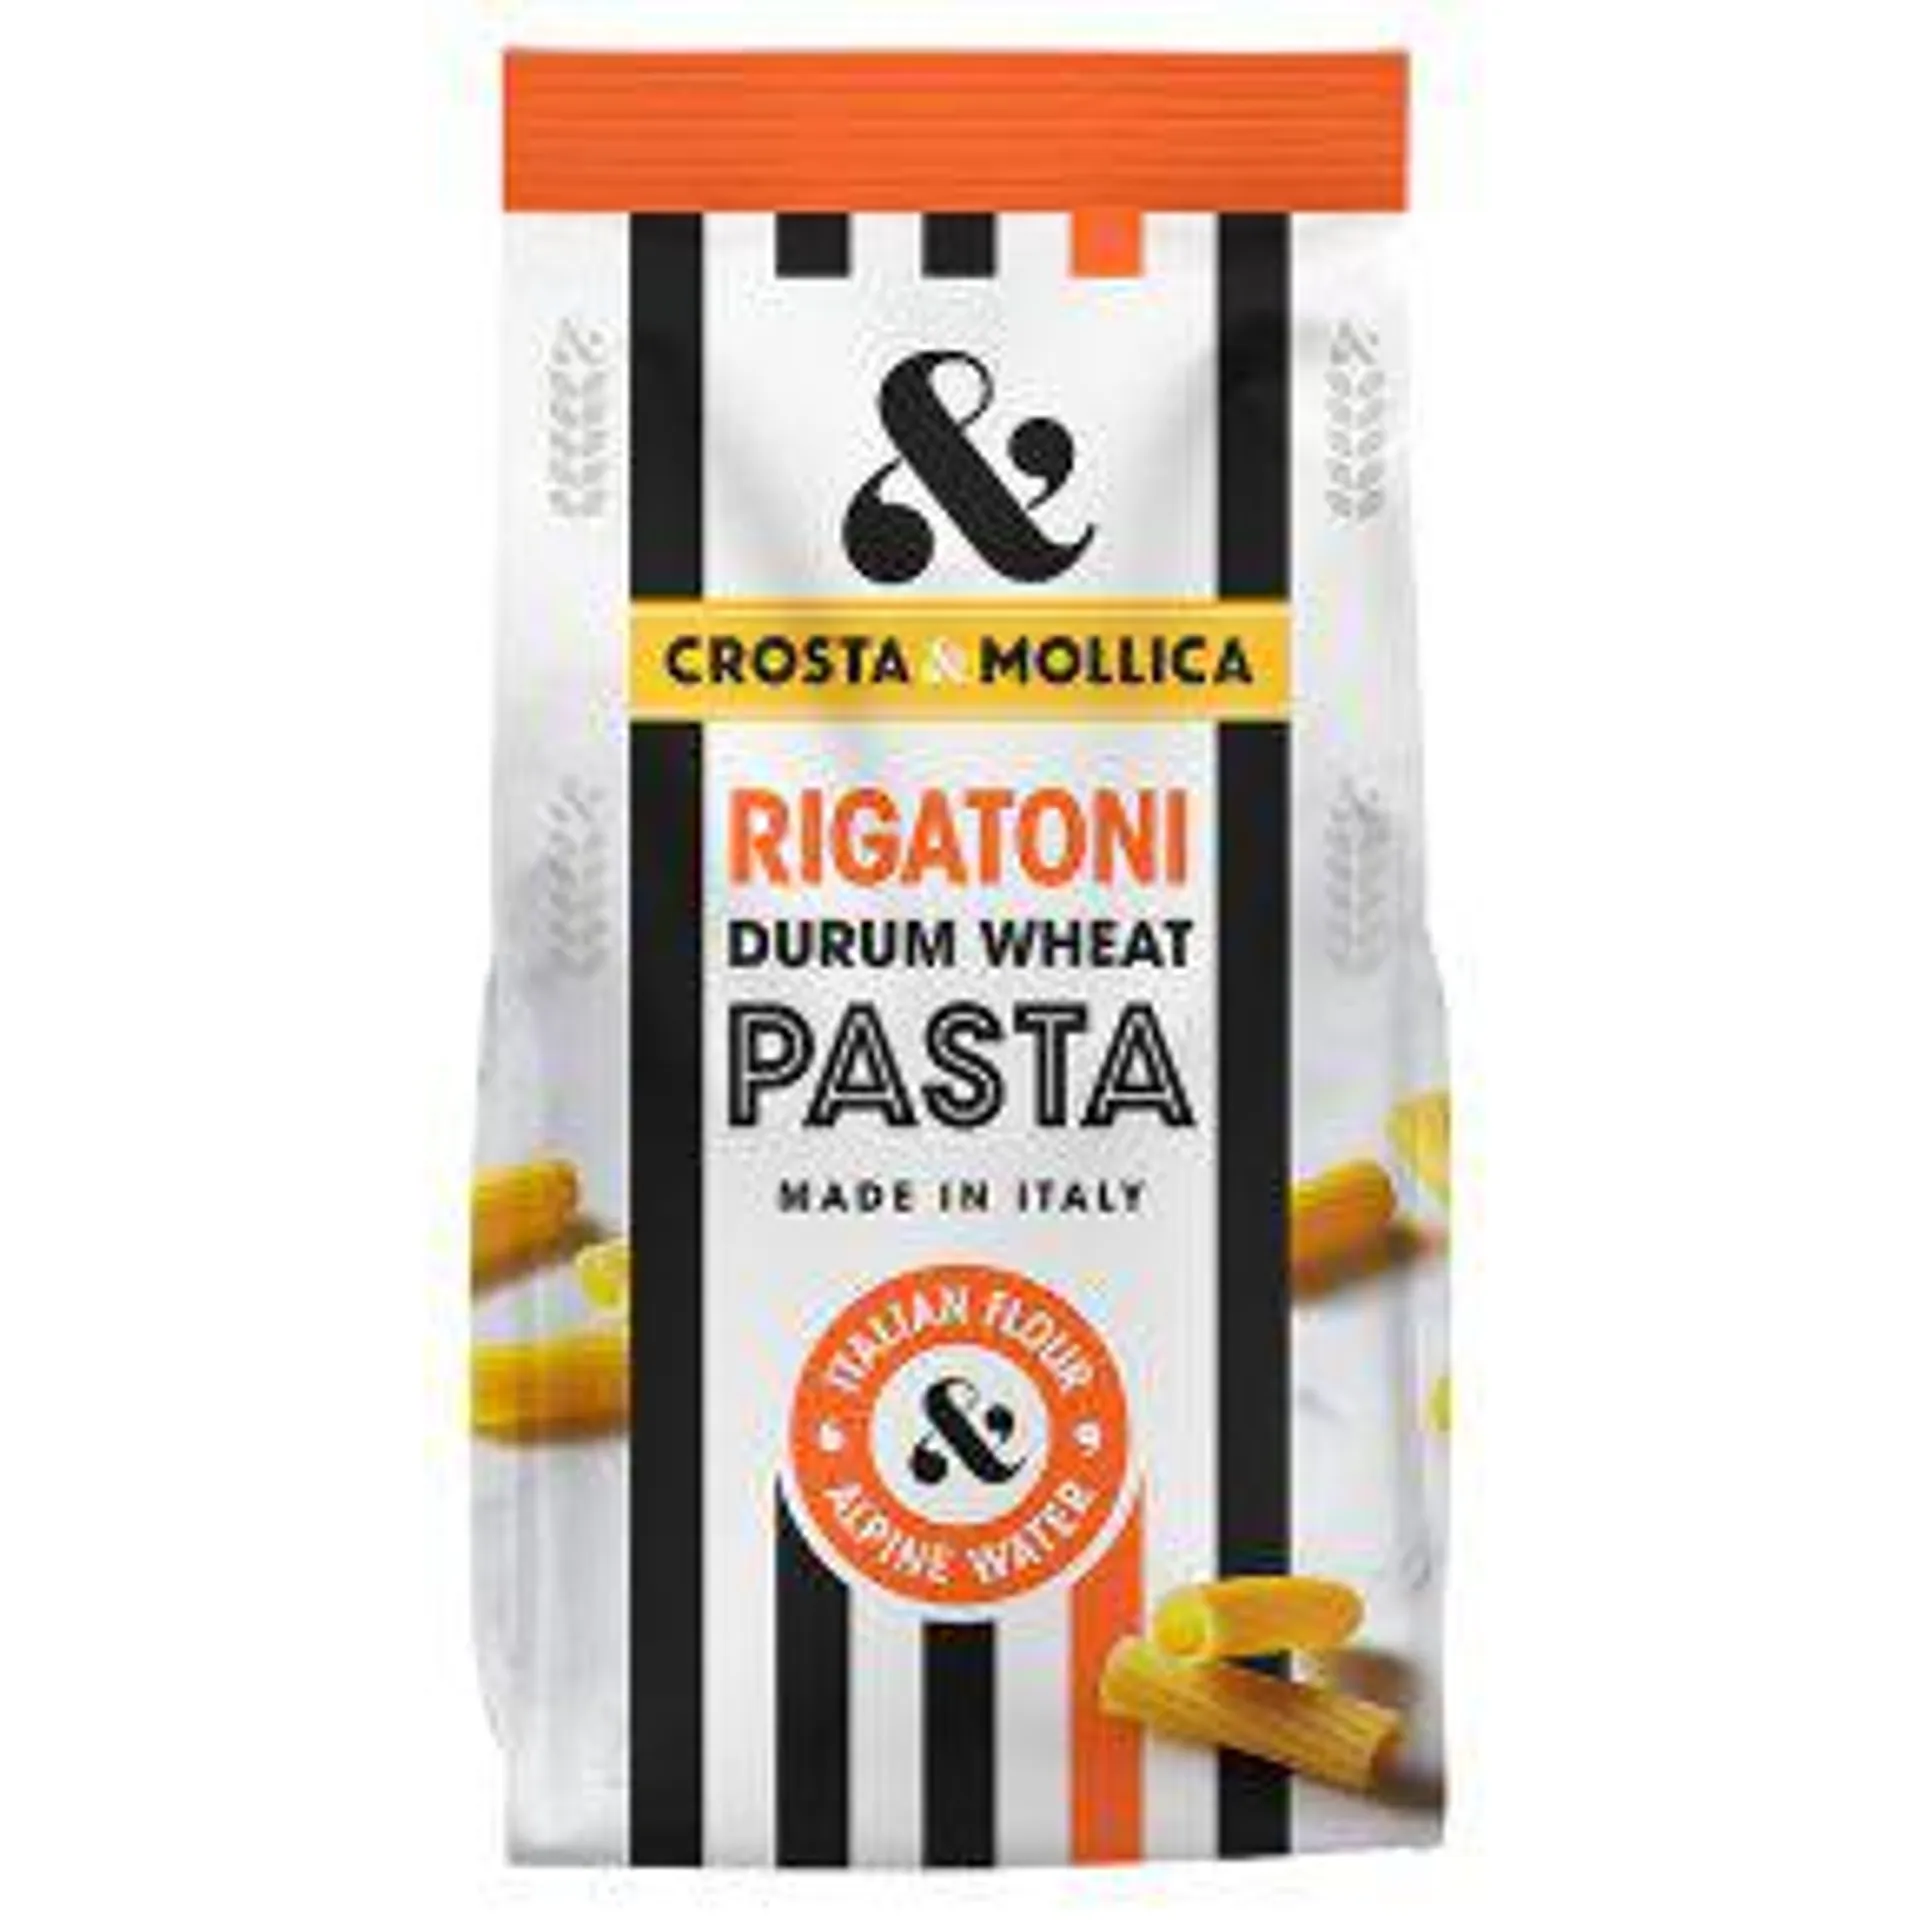 Crosta & Mollica Rigatoni Pasta